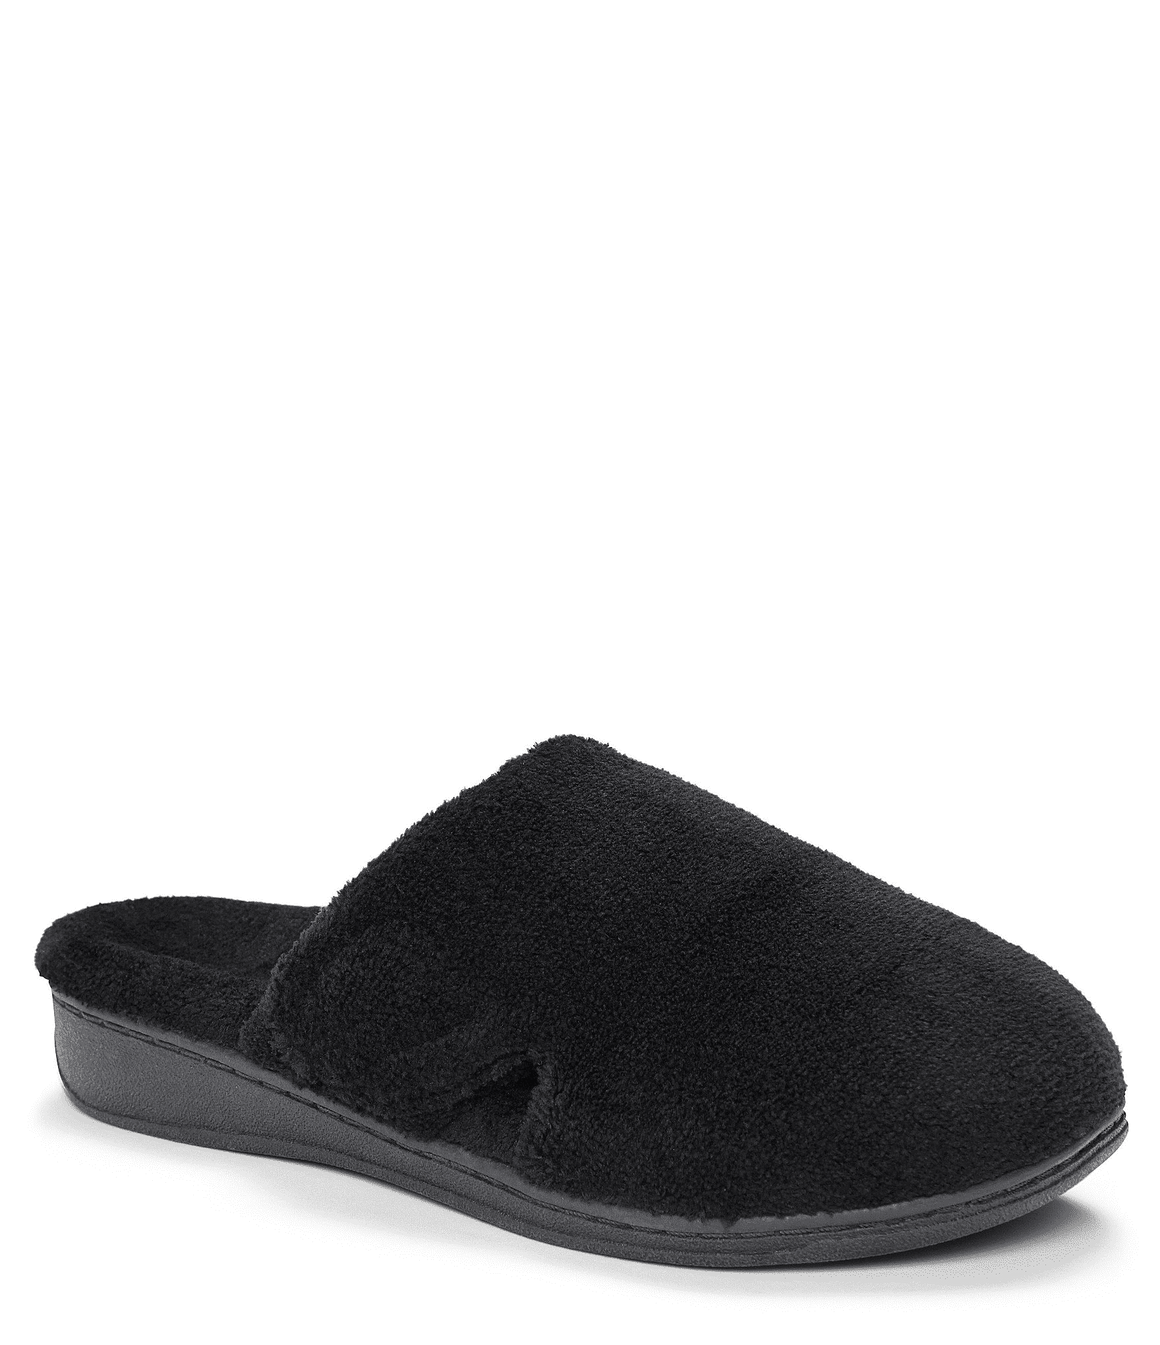 Vionic Women's Gemma Mule Slippers - Black 26GEMMA - ShoeShackOnline